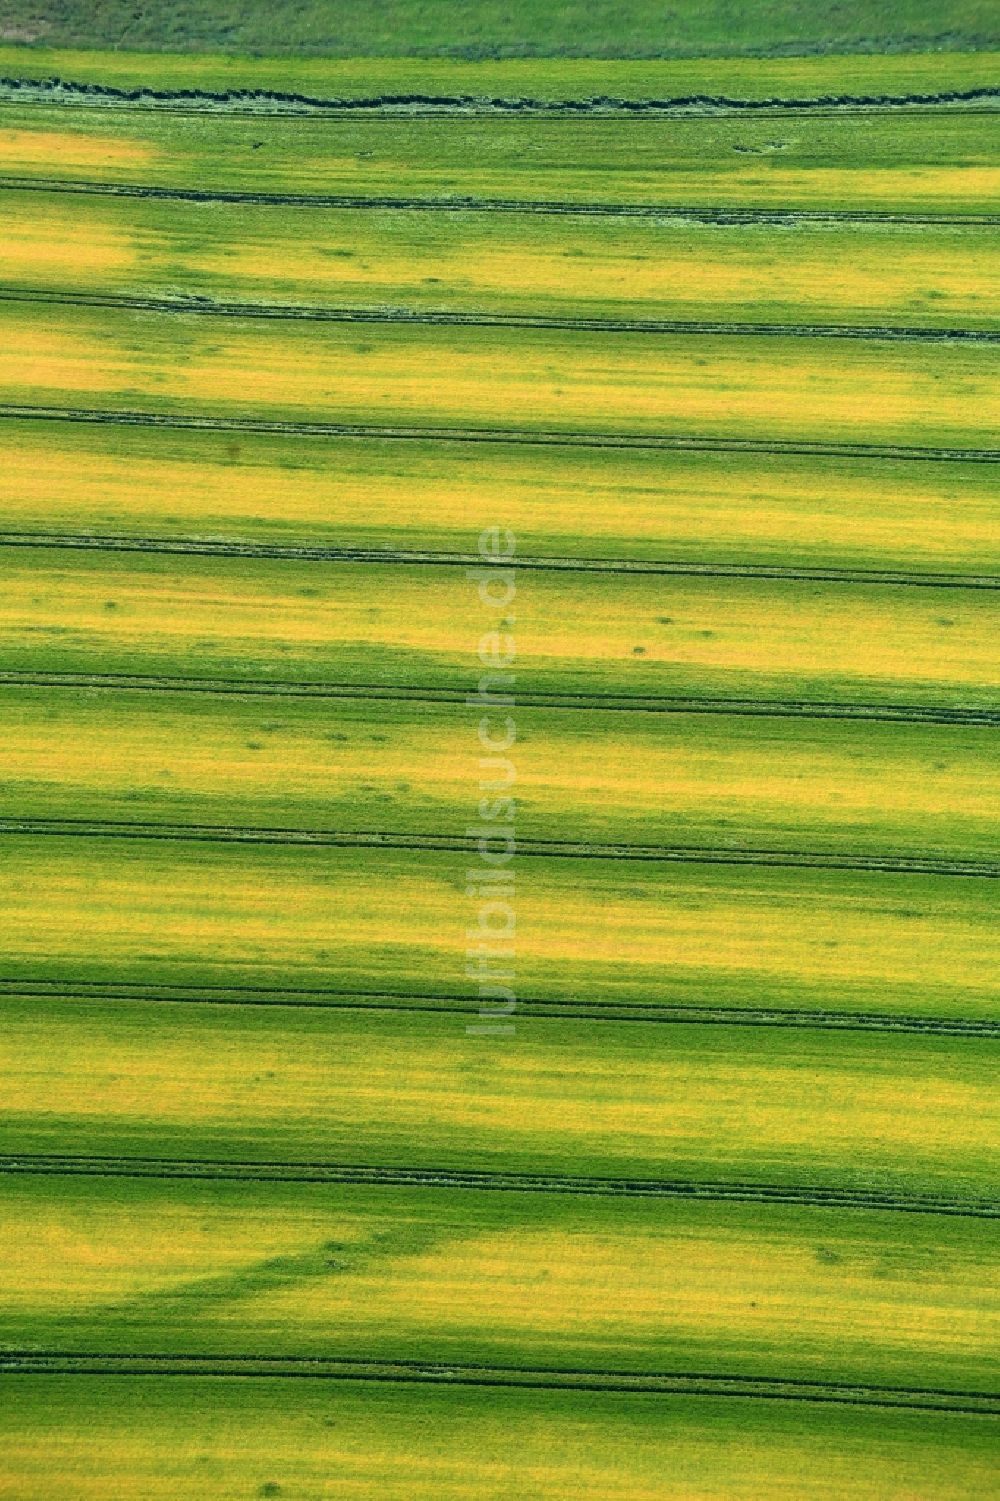 Luftaufnahme Zschippach - Strukturen auf landwirtschaftlichen Feldern in Zschippach im Bundesland Thüringen, Deutschland